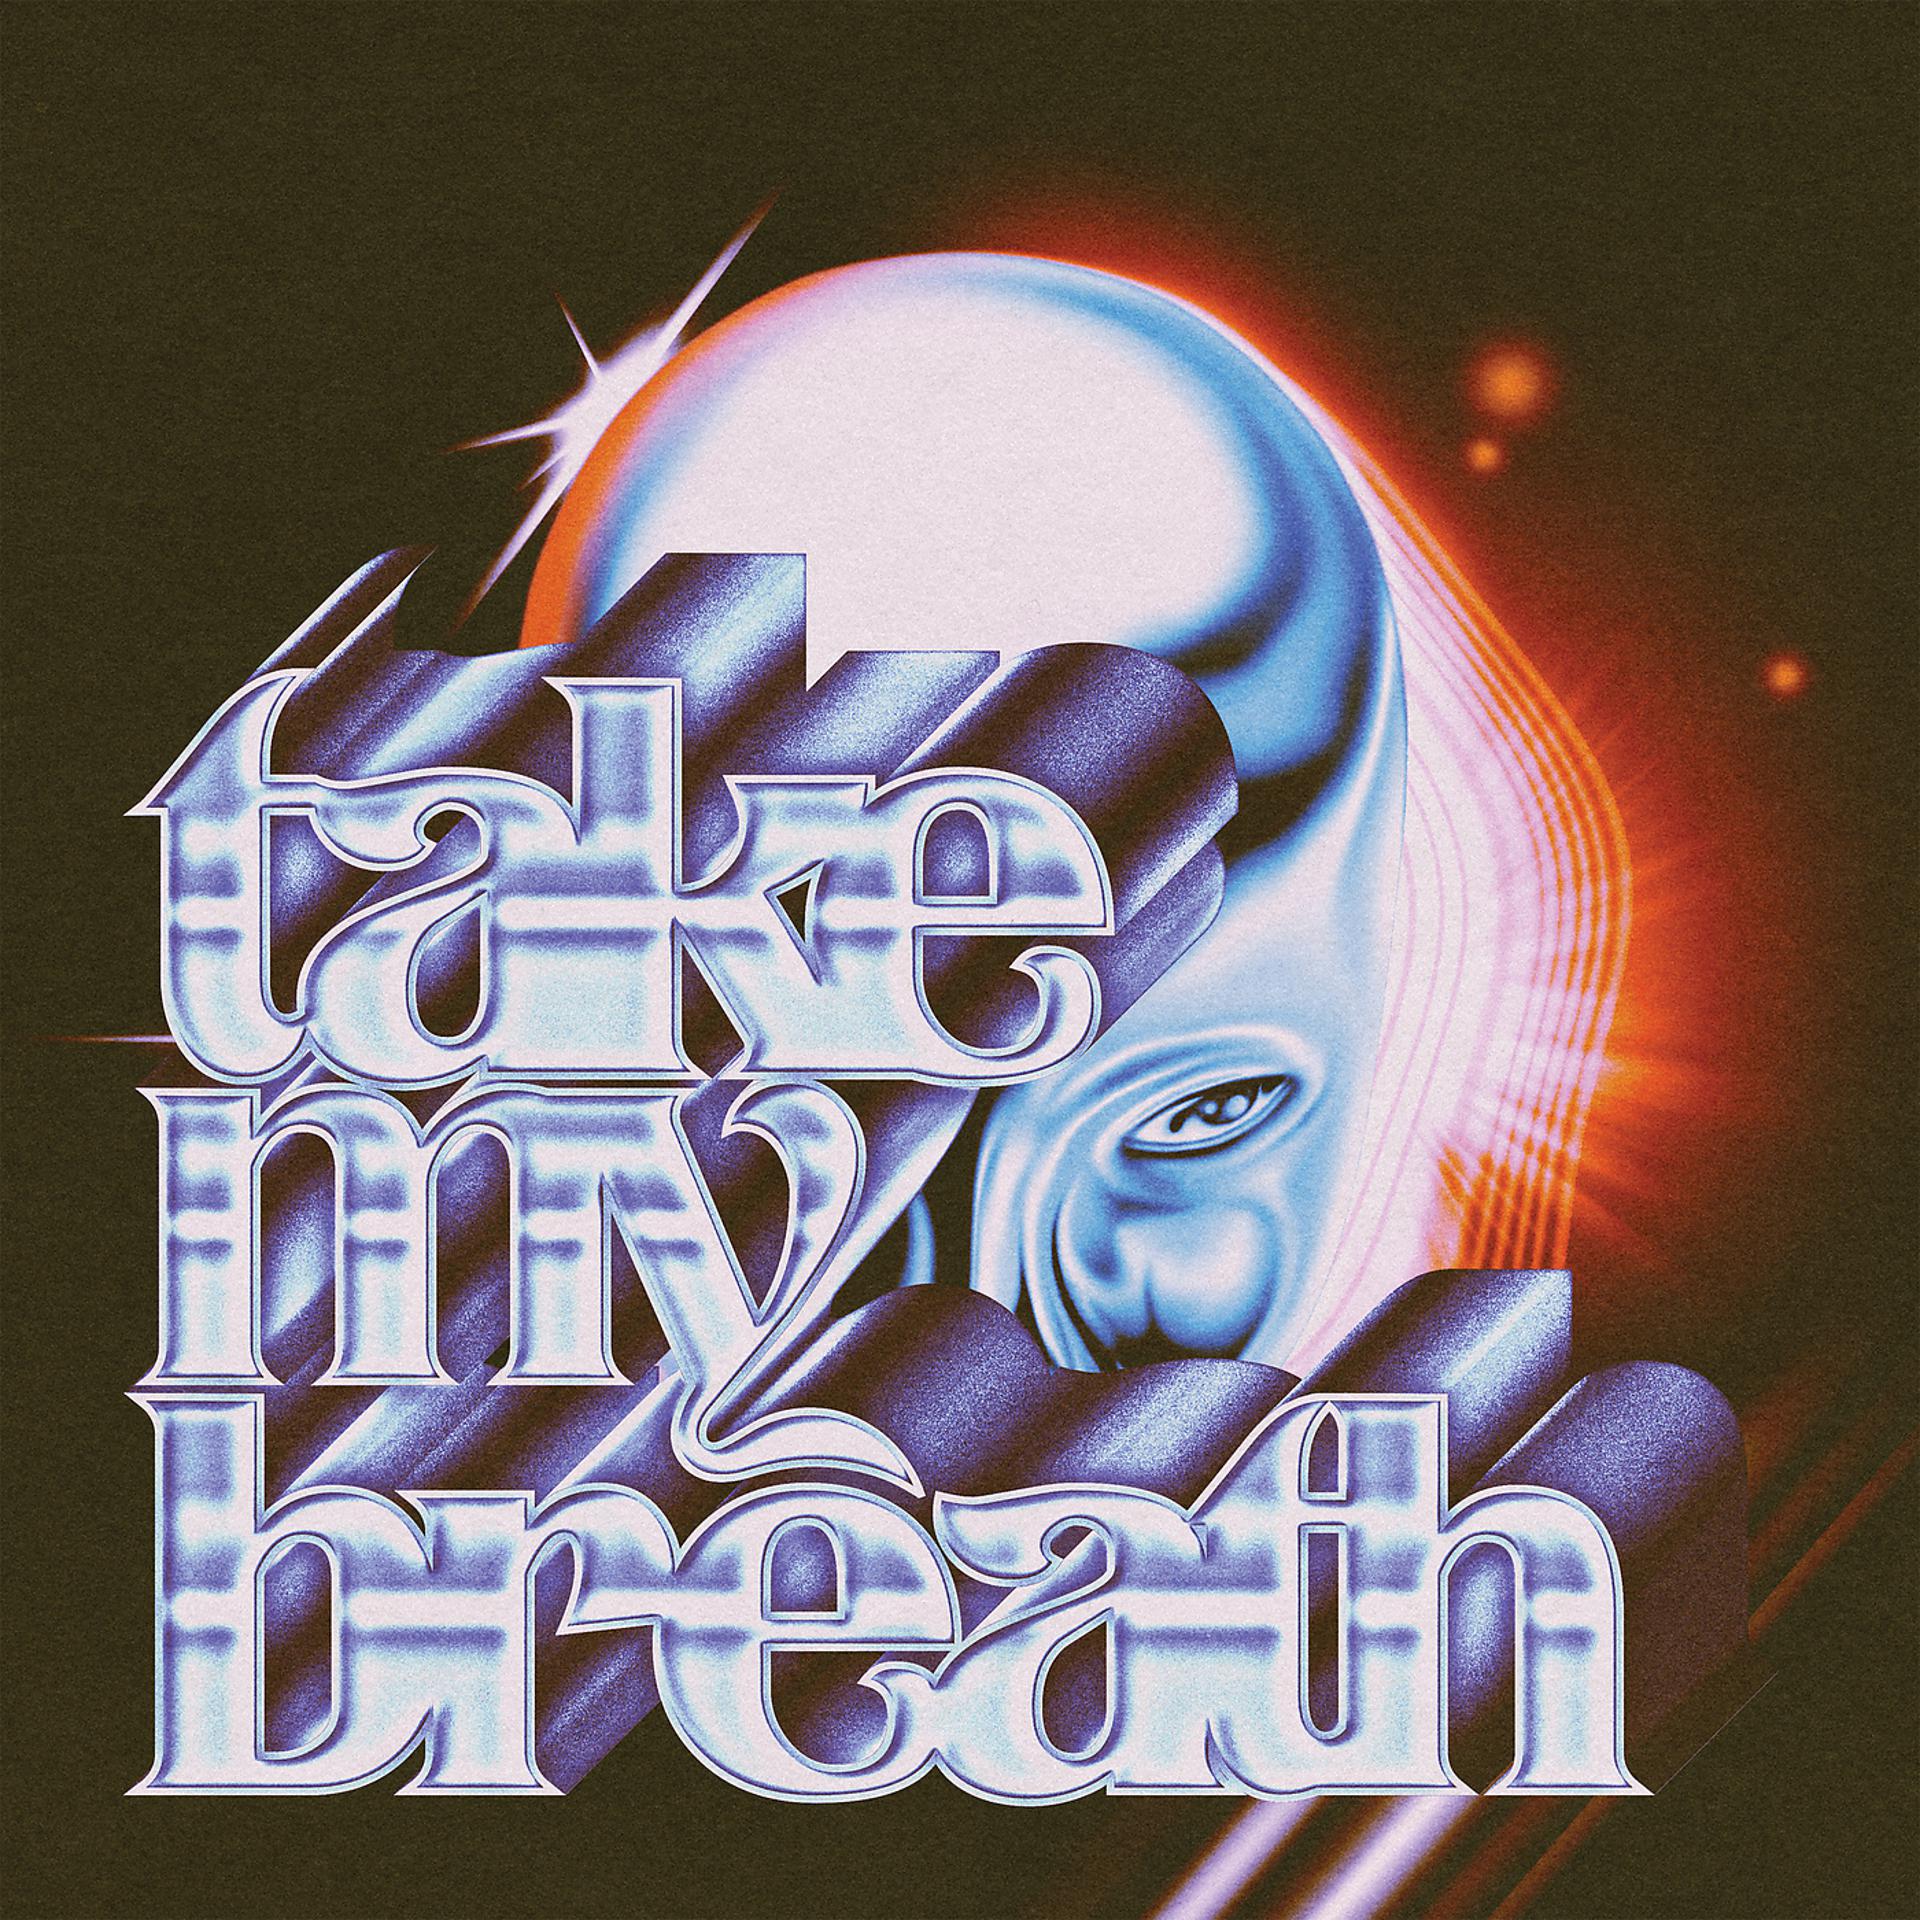 Постер альбома Take My Breath